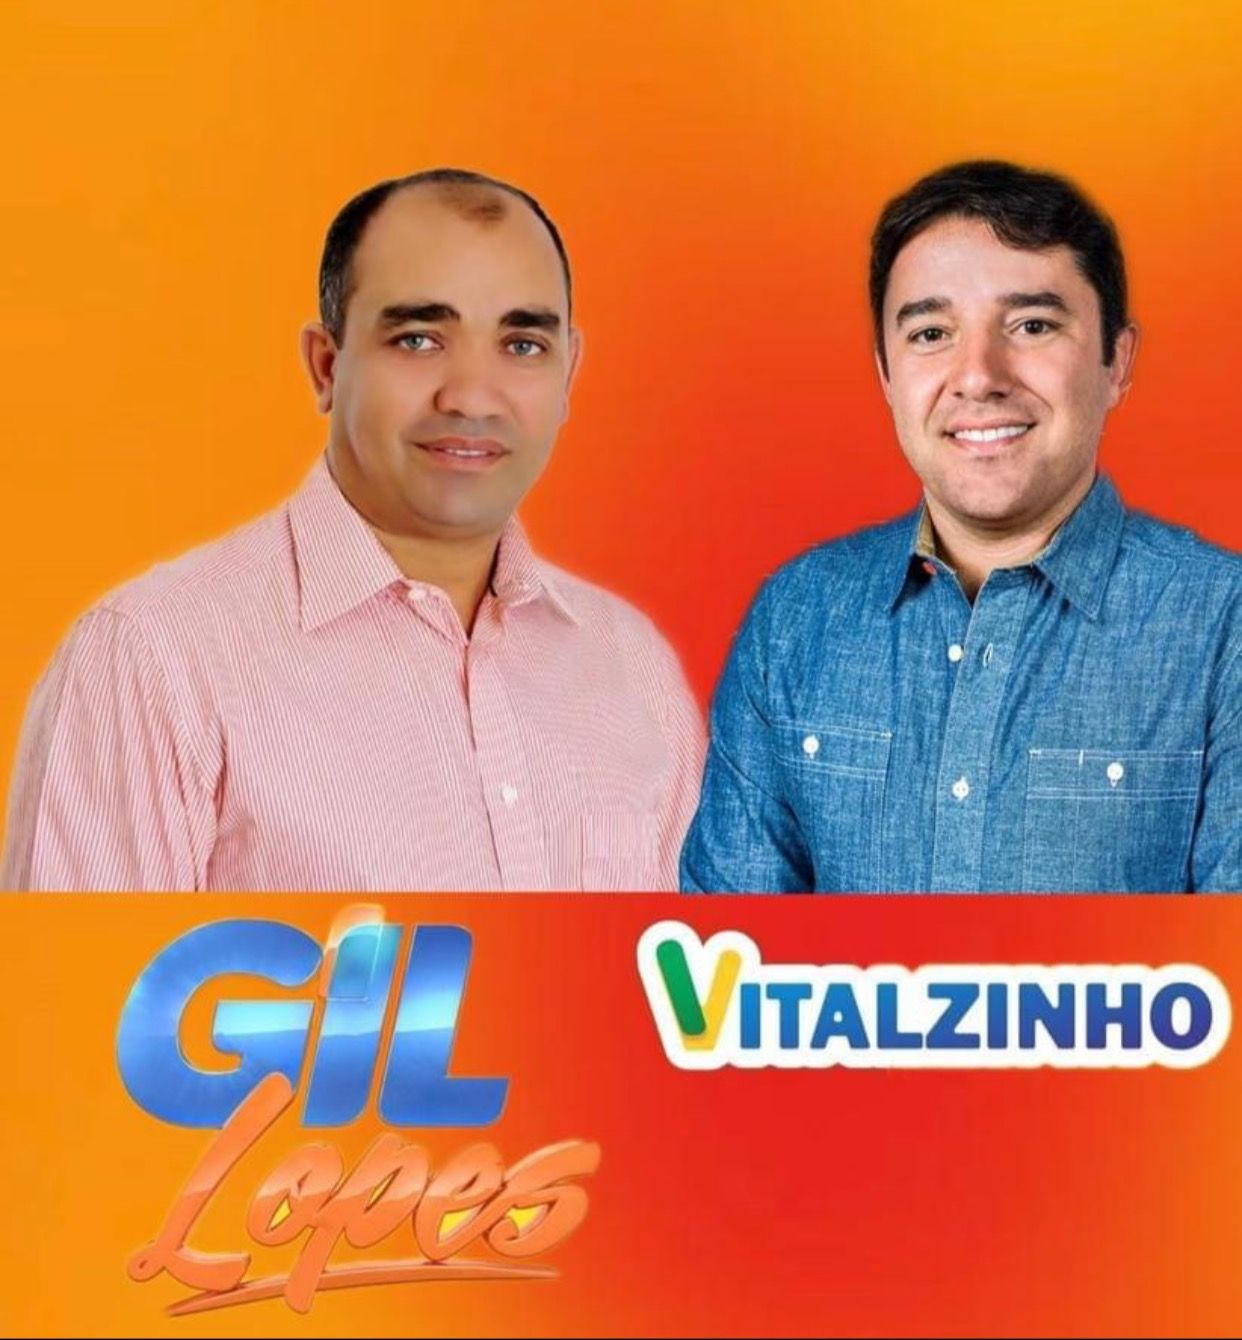 ELEIÇÕES 2020: Gil Lopes e Vitalzinho se unem para formar chapa em Barra do Corda